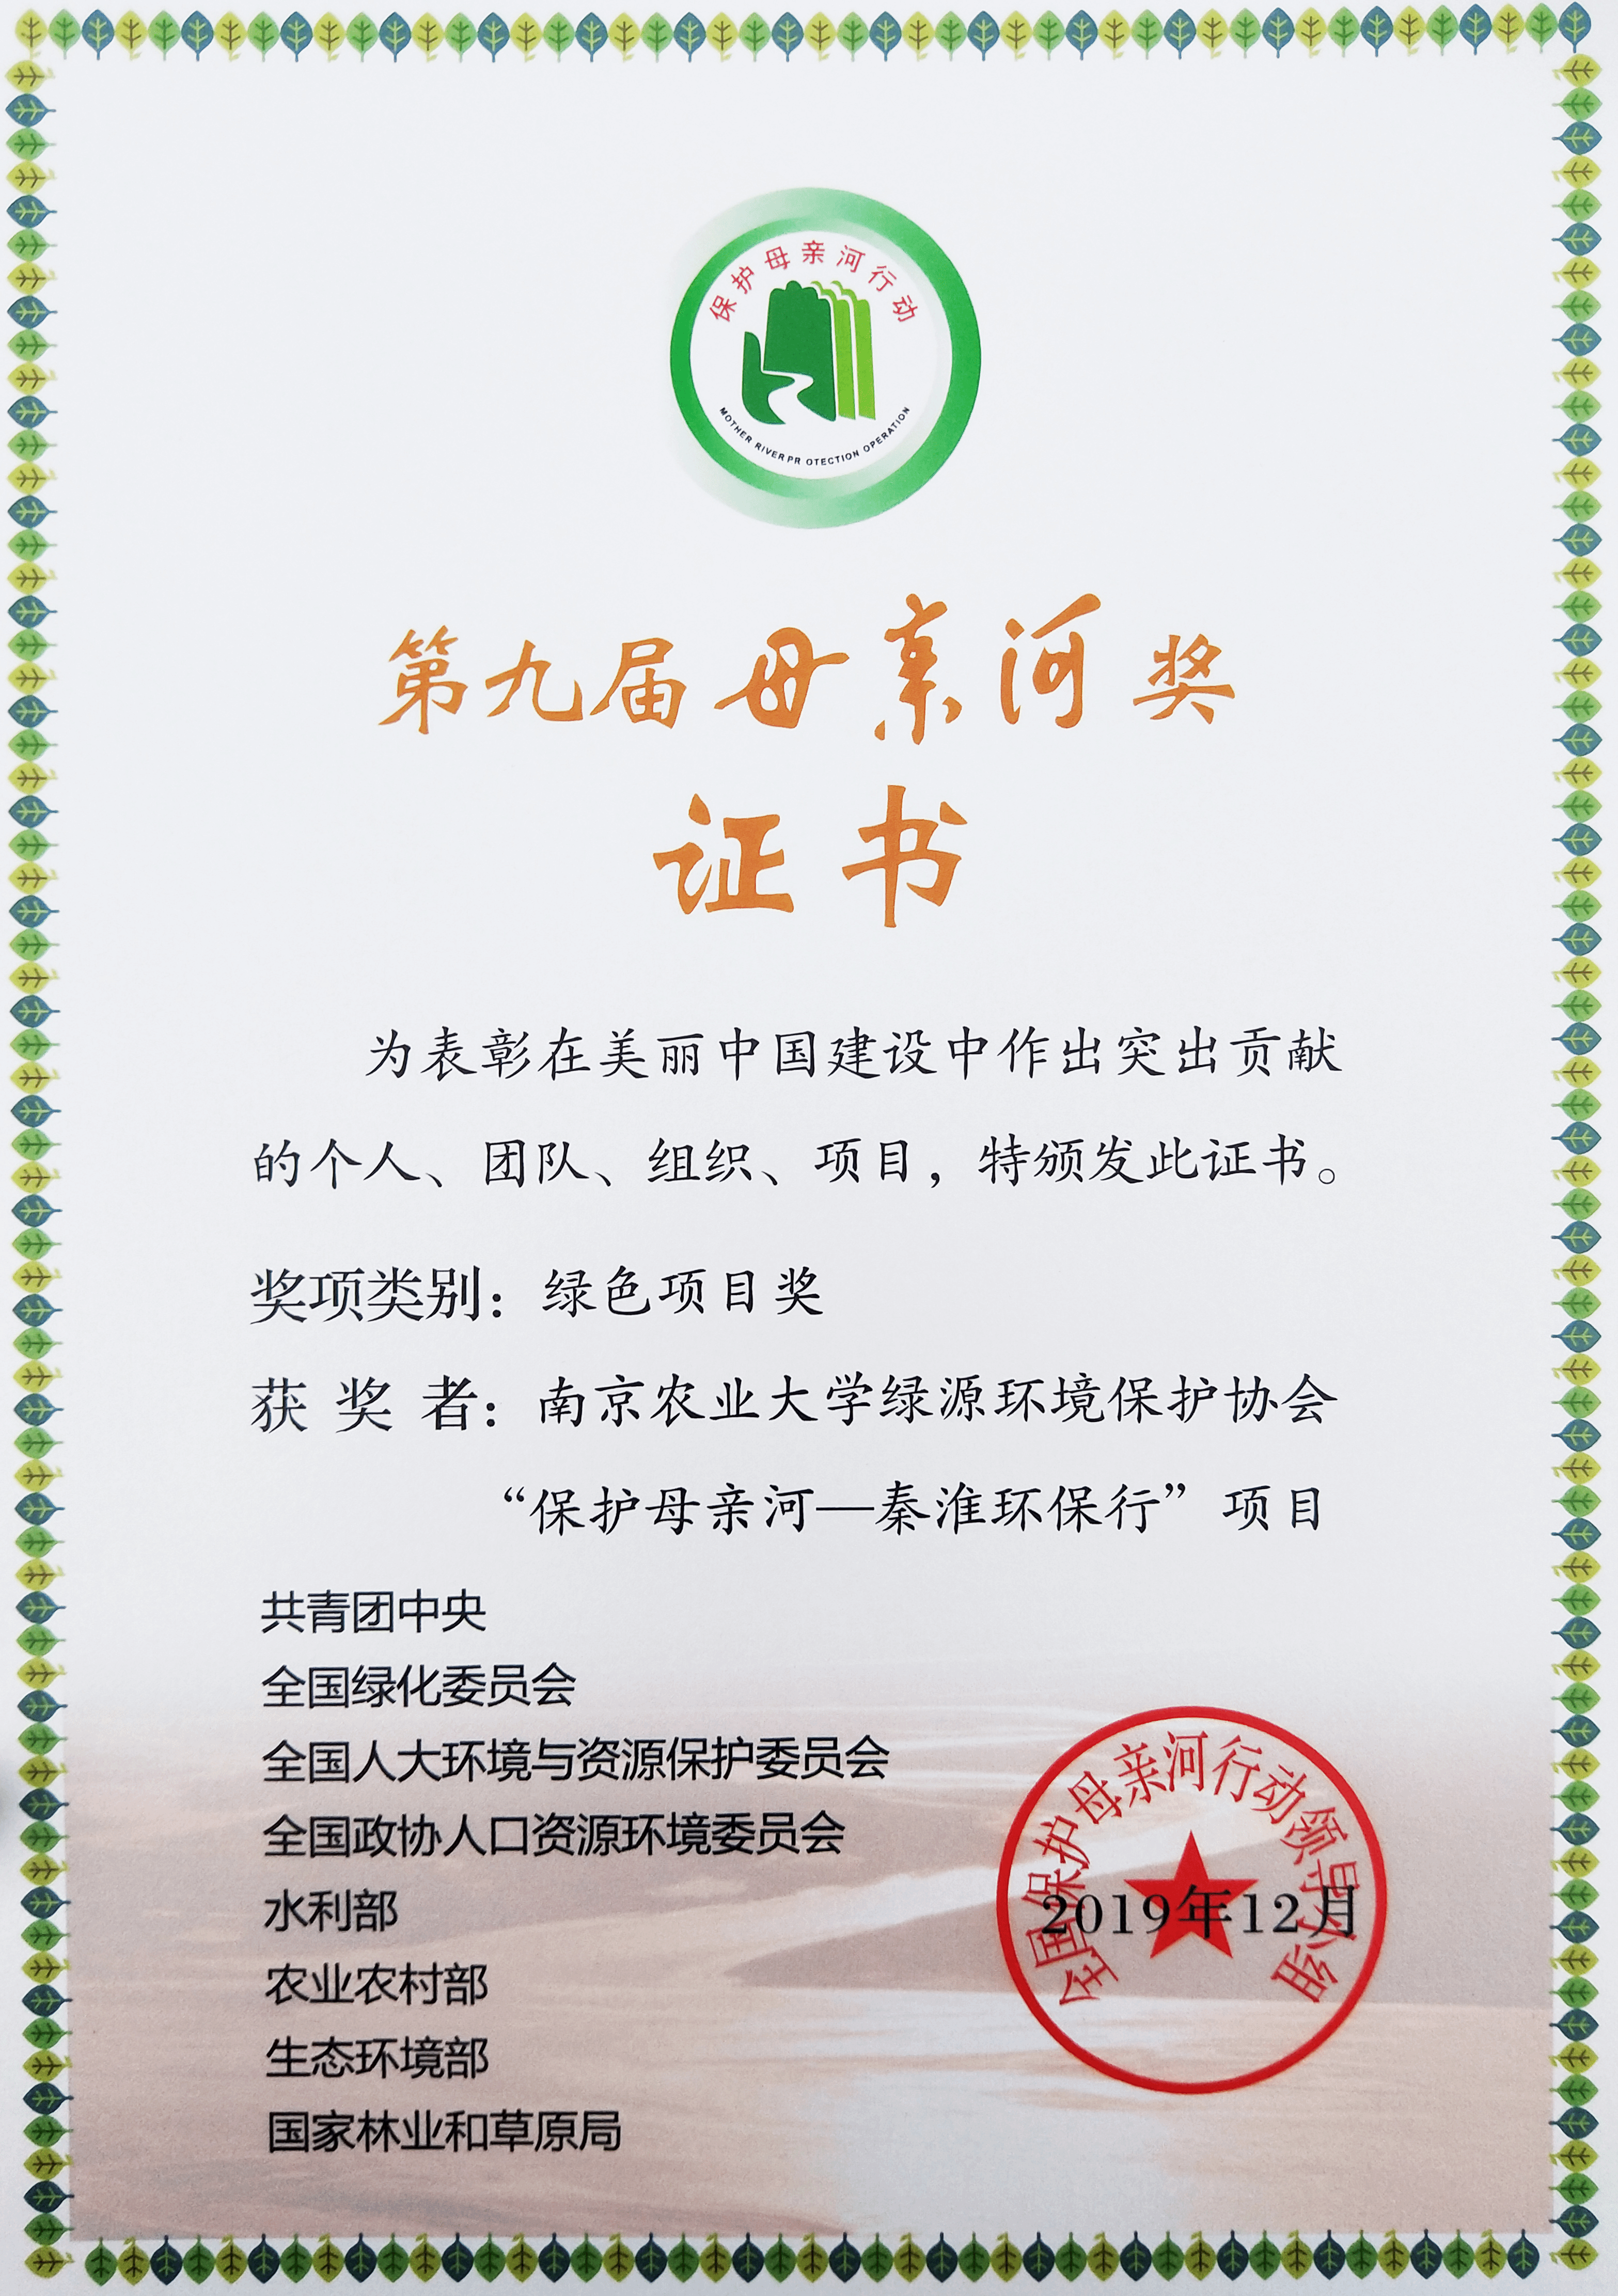 我校保护母亲河秦淮环保行项目荣获第九届母亲河奖